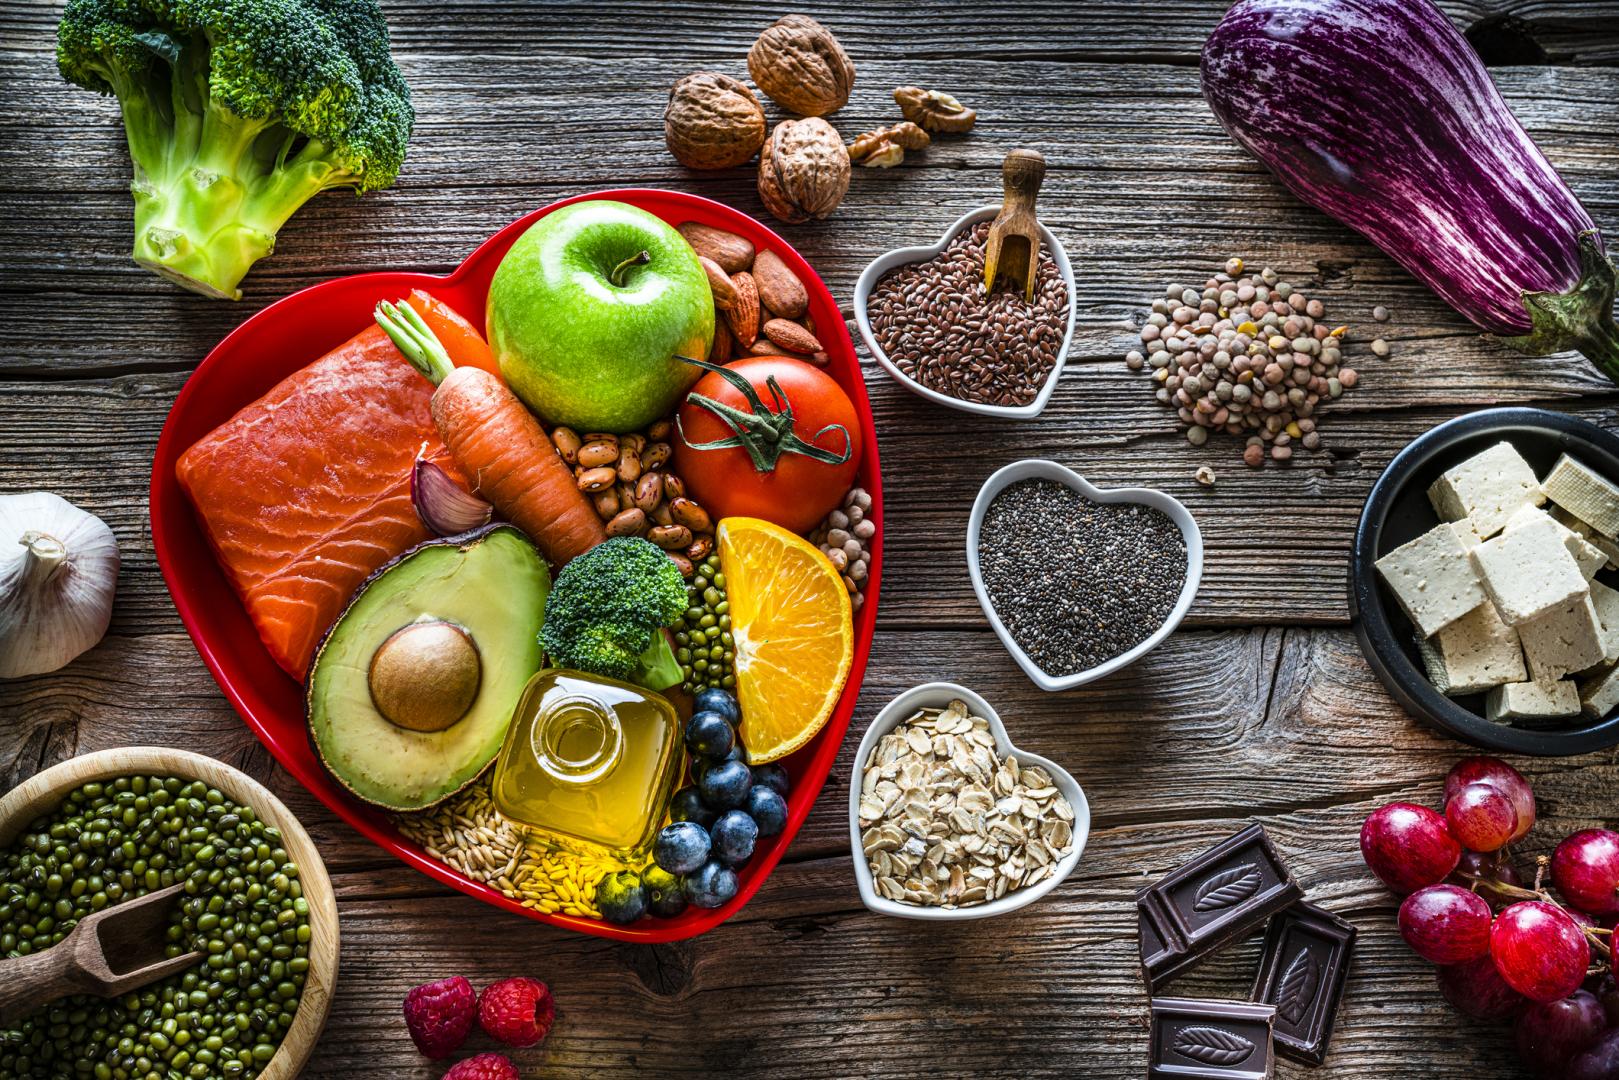  Táplálkozz fenntarthatóan: a flexitáriánius étrend